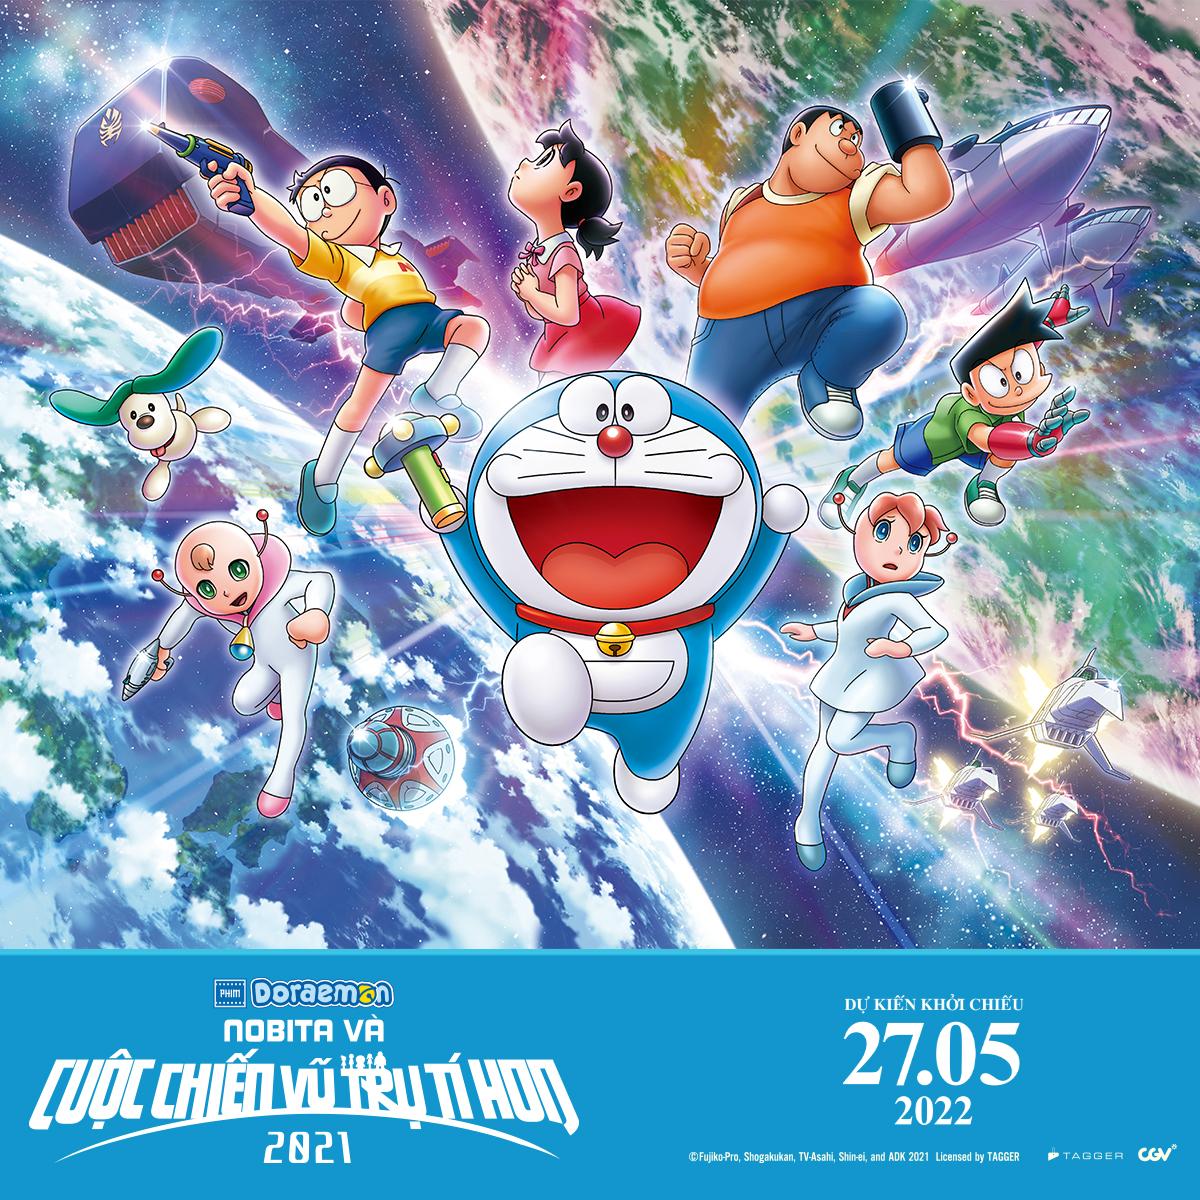 Bước vào thế giới diệu kỳ của Doraemon, nơi các trợ thủ Robot đầy màu sắc và thú vị sẽ đưa bạn đến bất kỳ nơi nào và thực hiện bất kỳ điều gì bạn muốn!